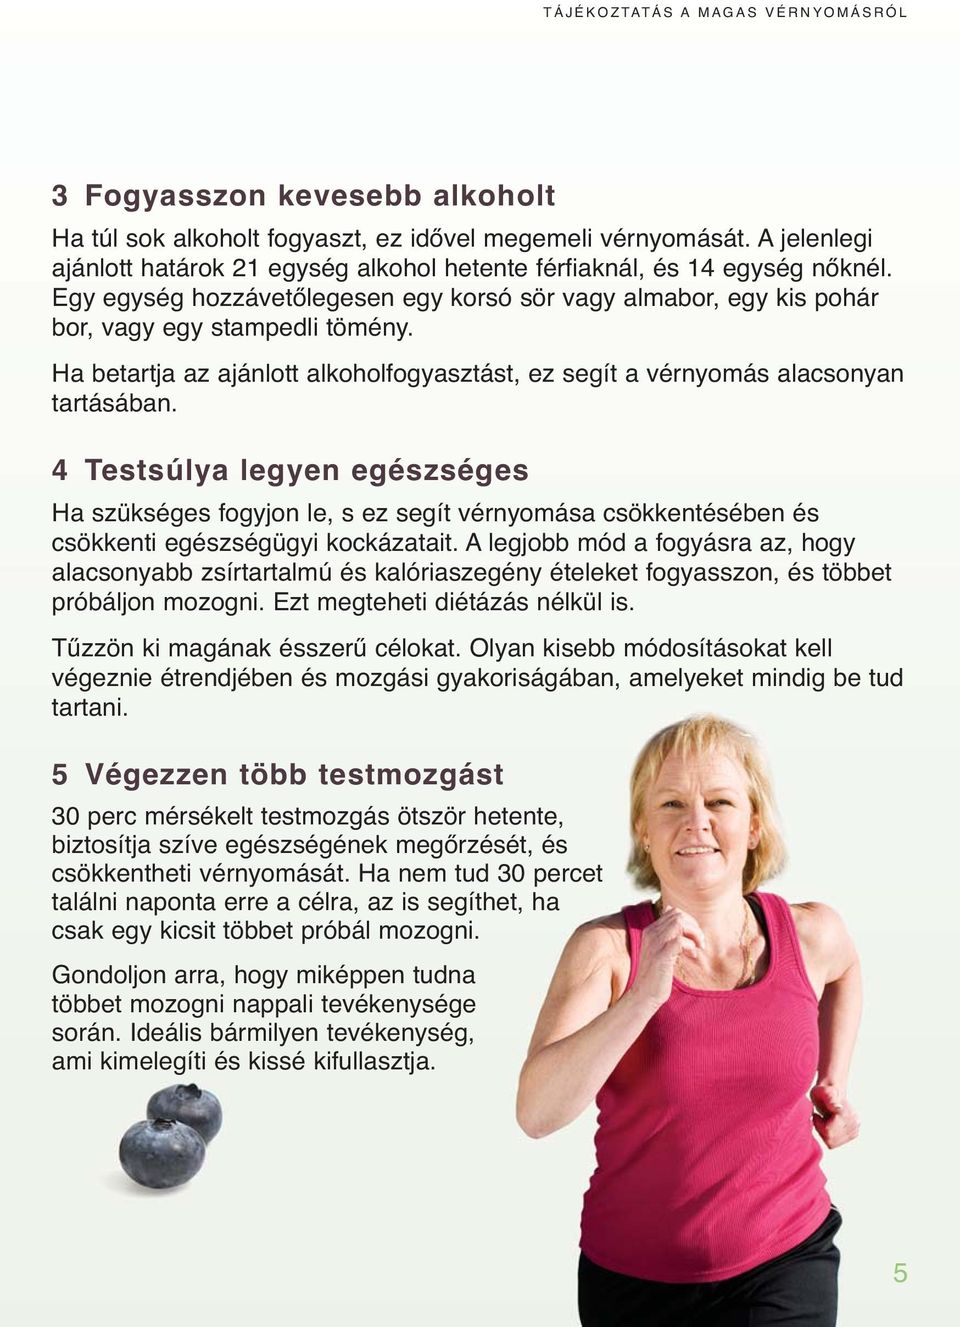 egészségügyi magazin a magas vérnyomásról)